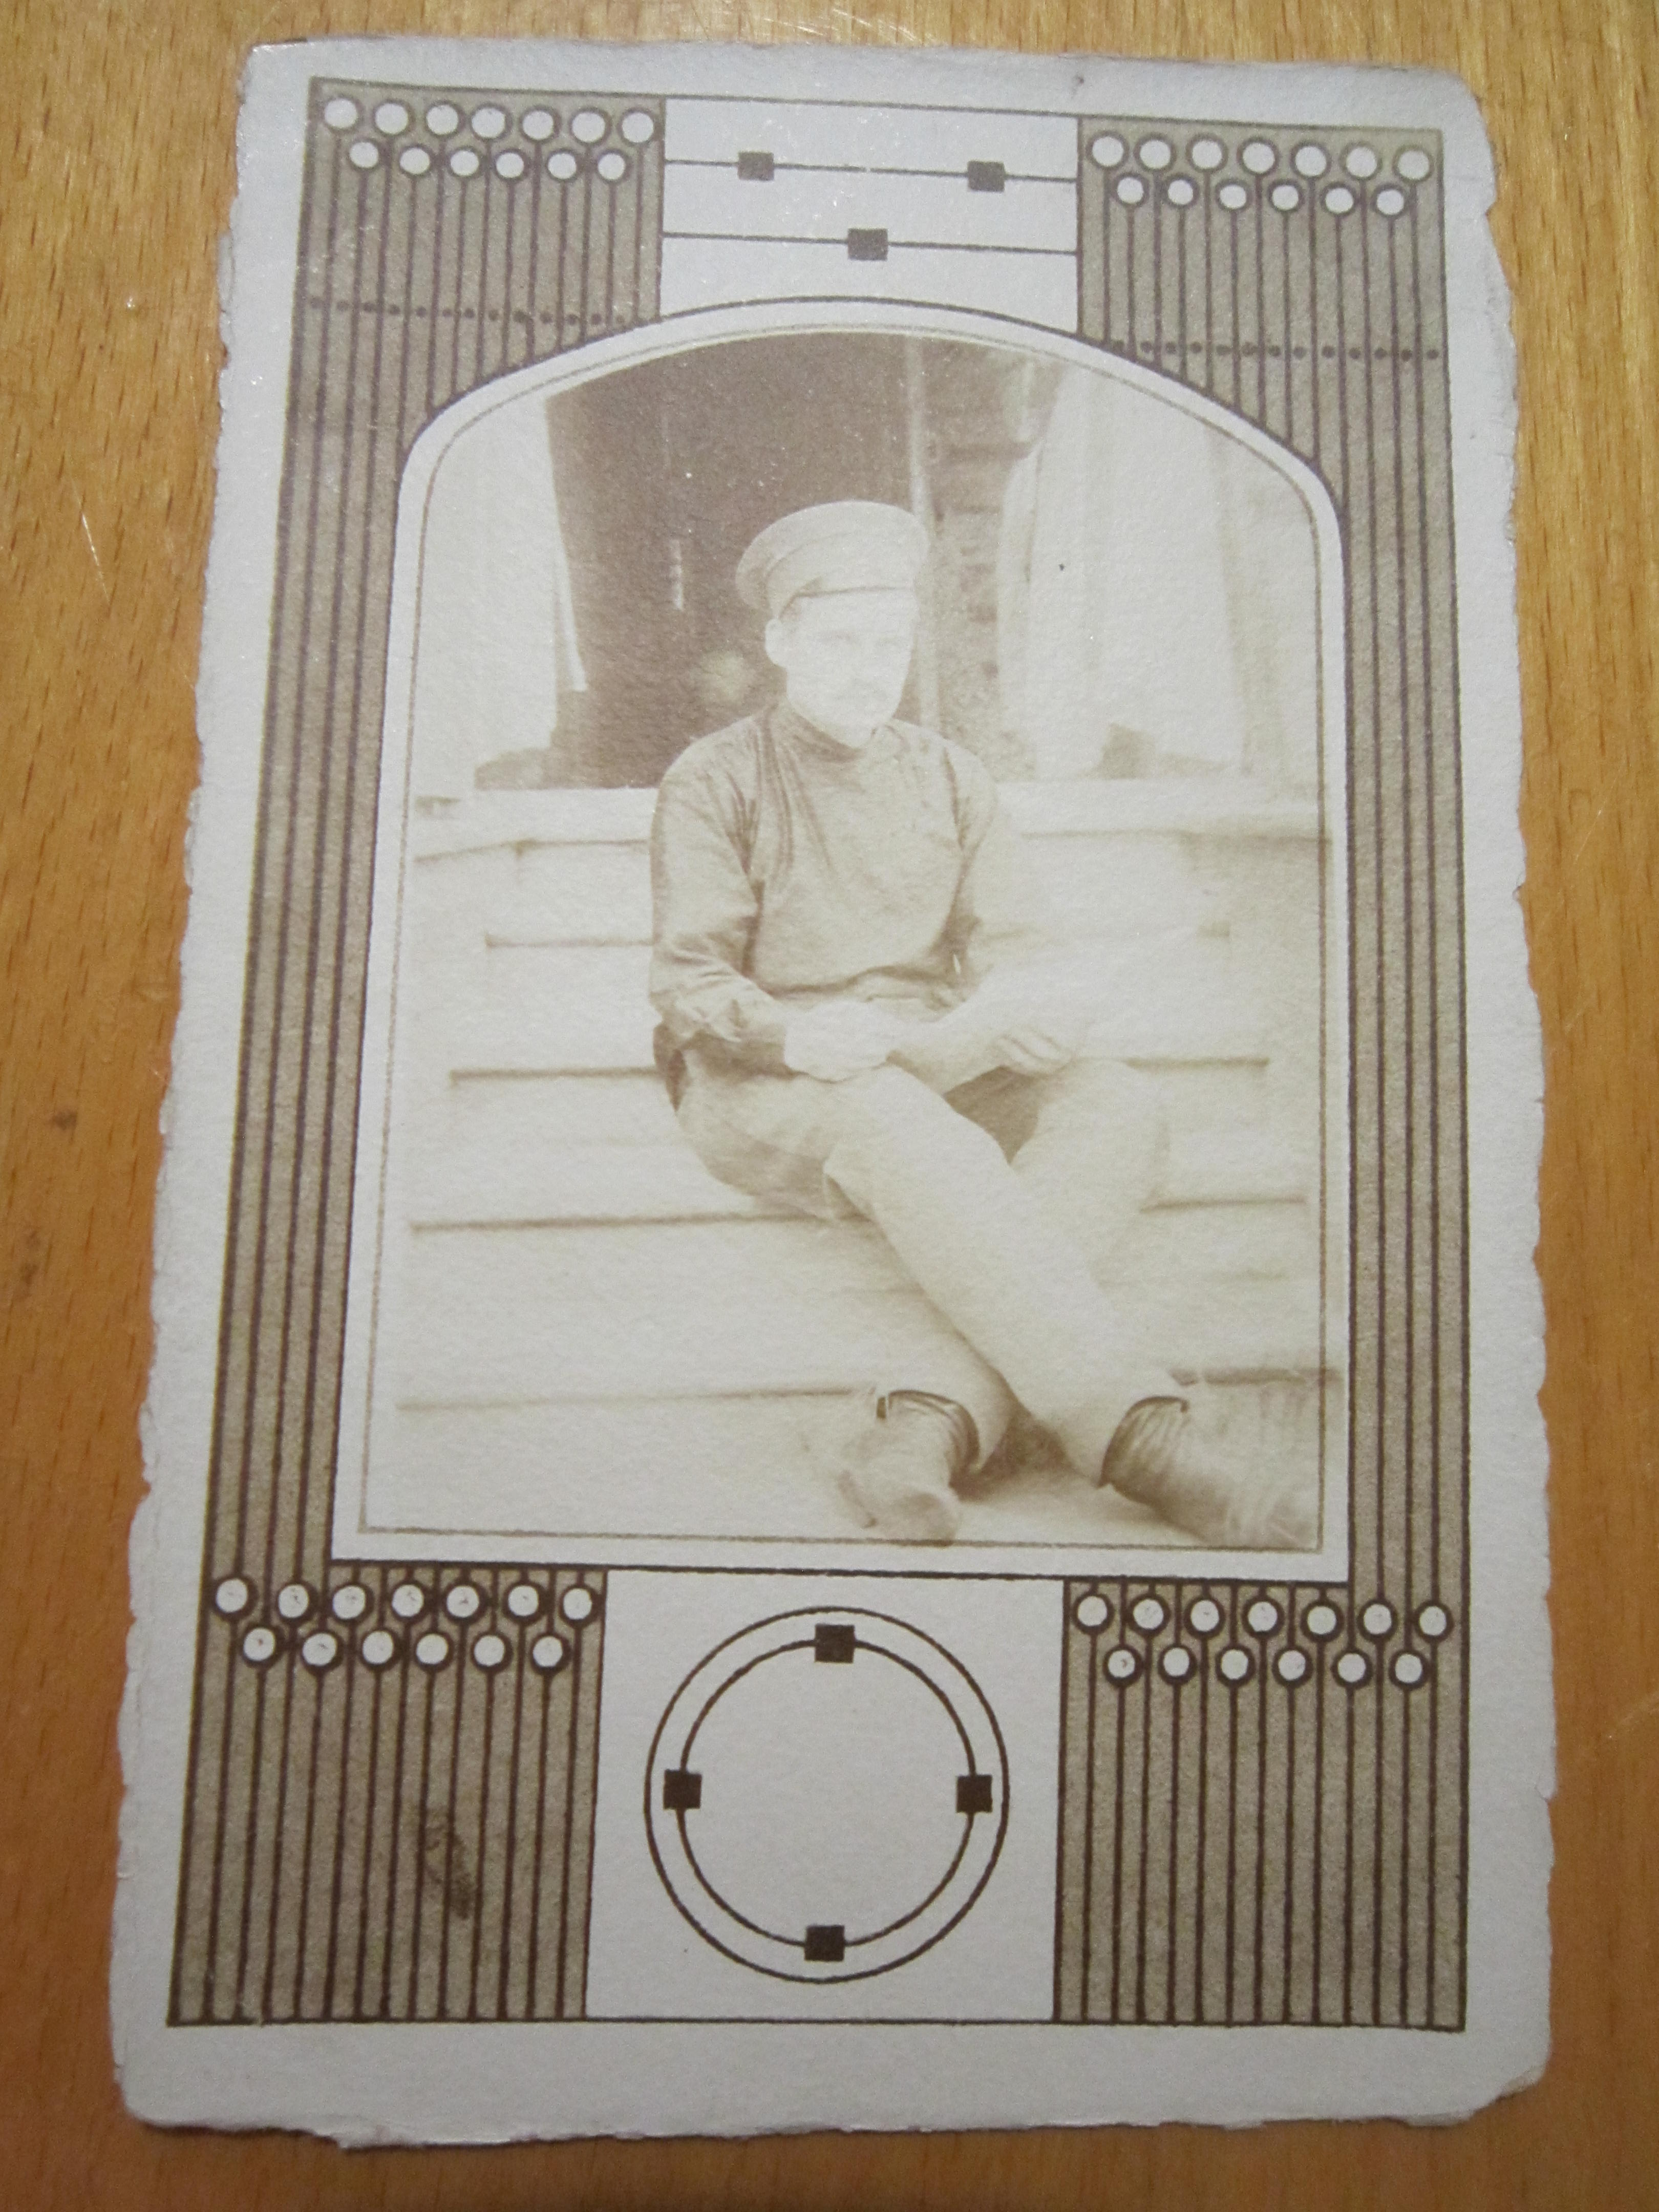 Открытое письмо.Почтовая карточка."Кадет на крыльце",до 1917 г.,фото одной семьи №17.